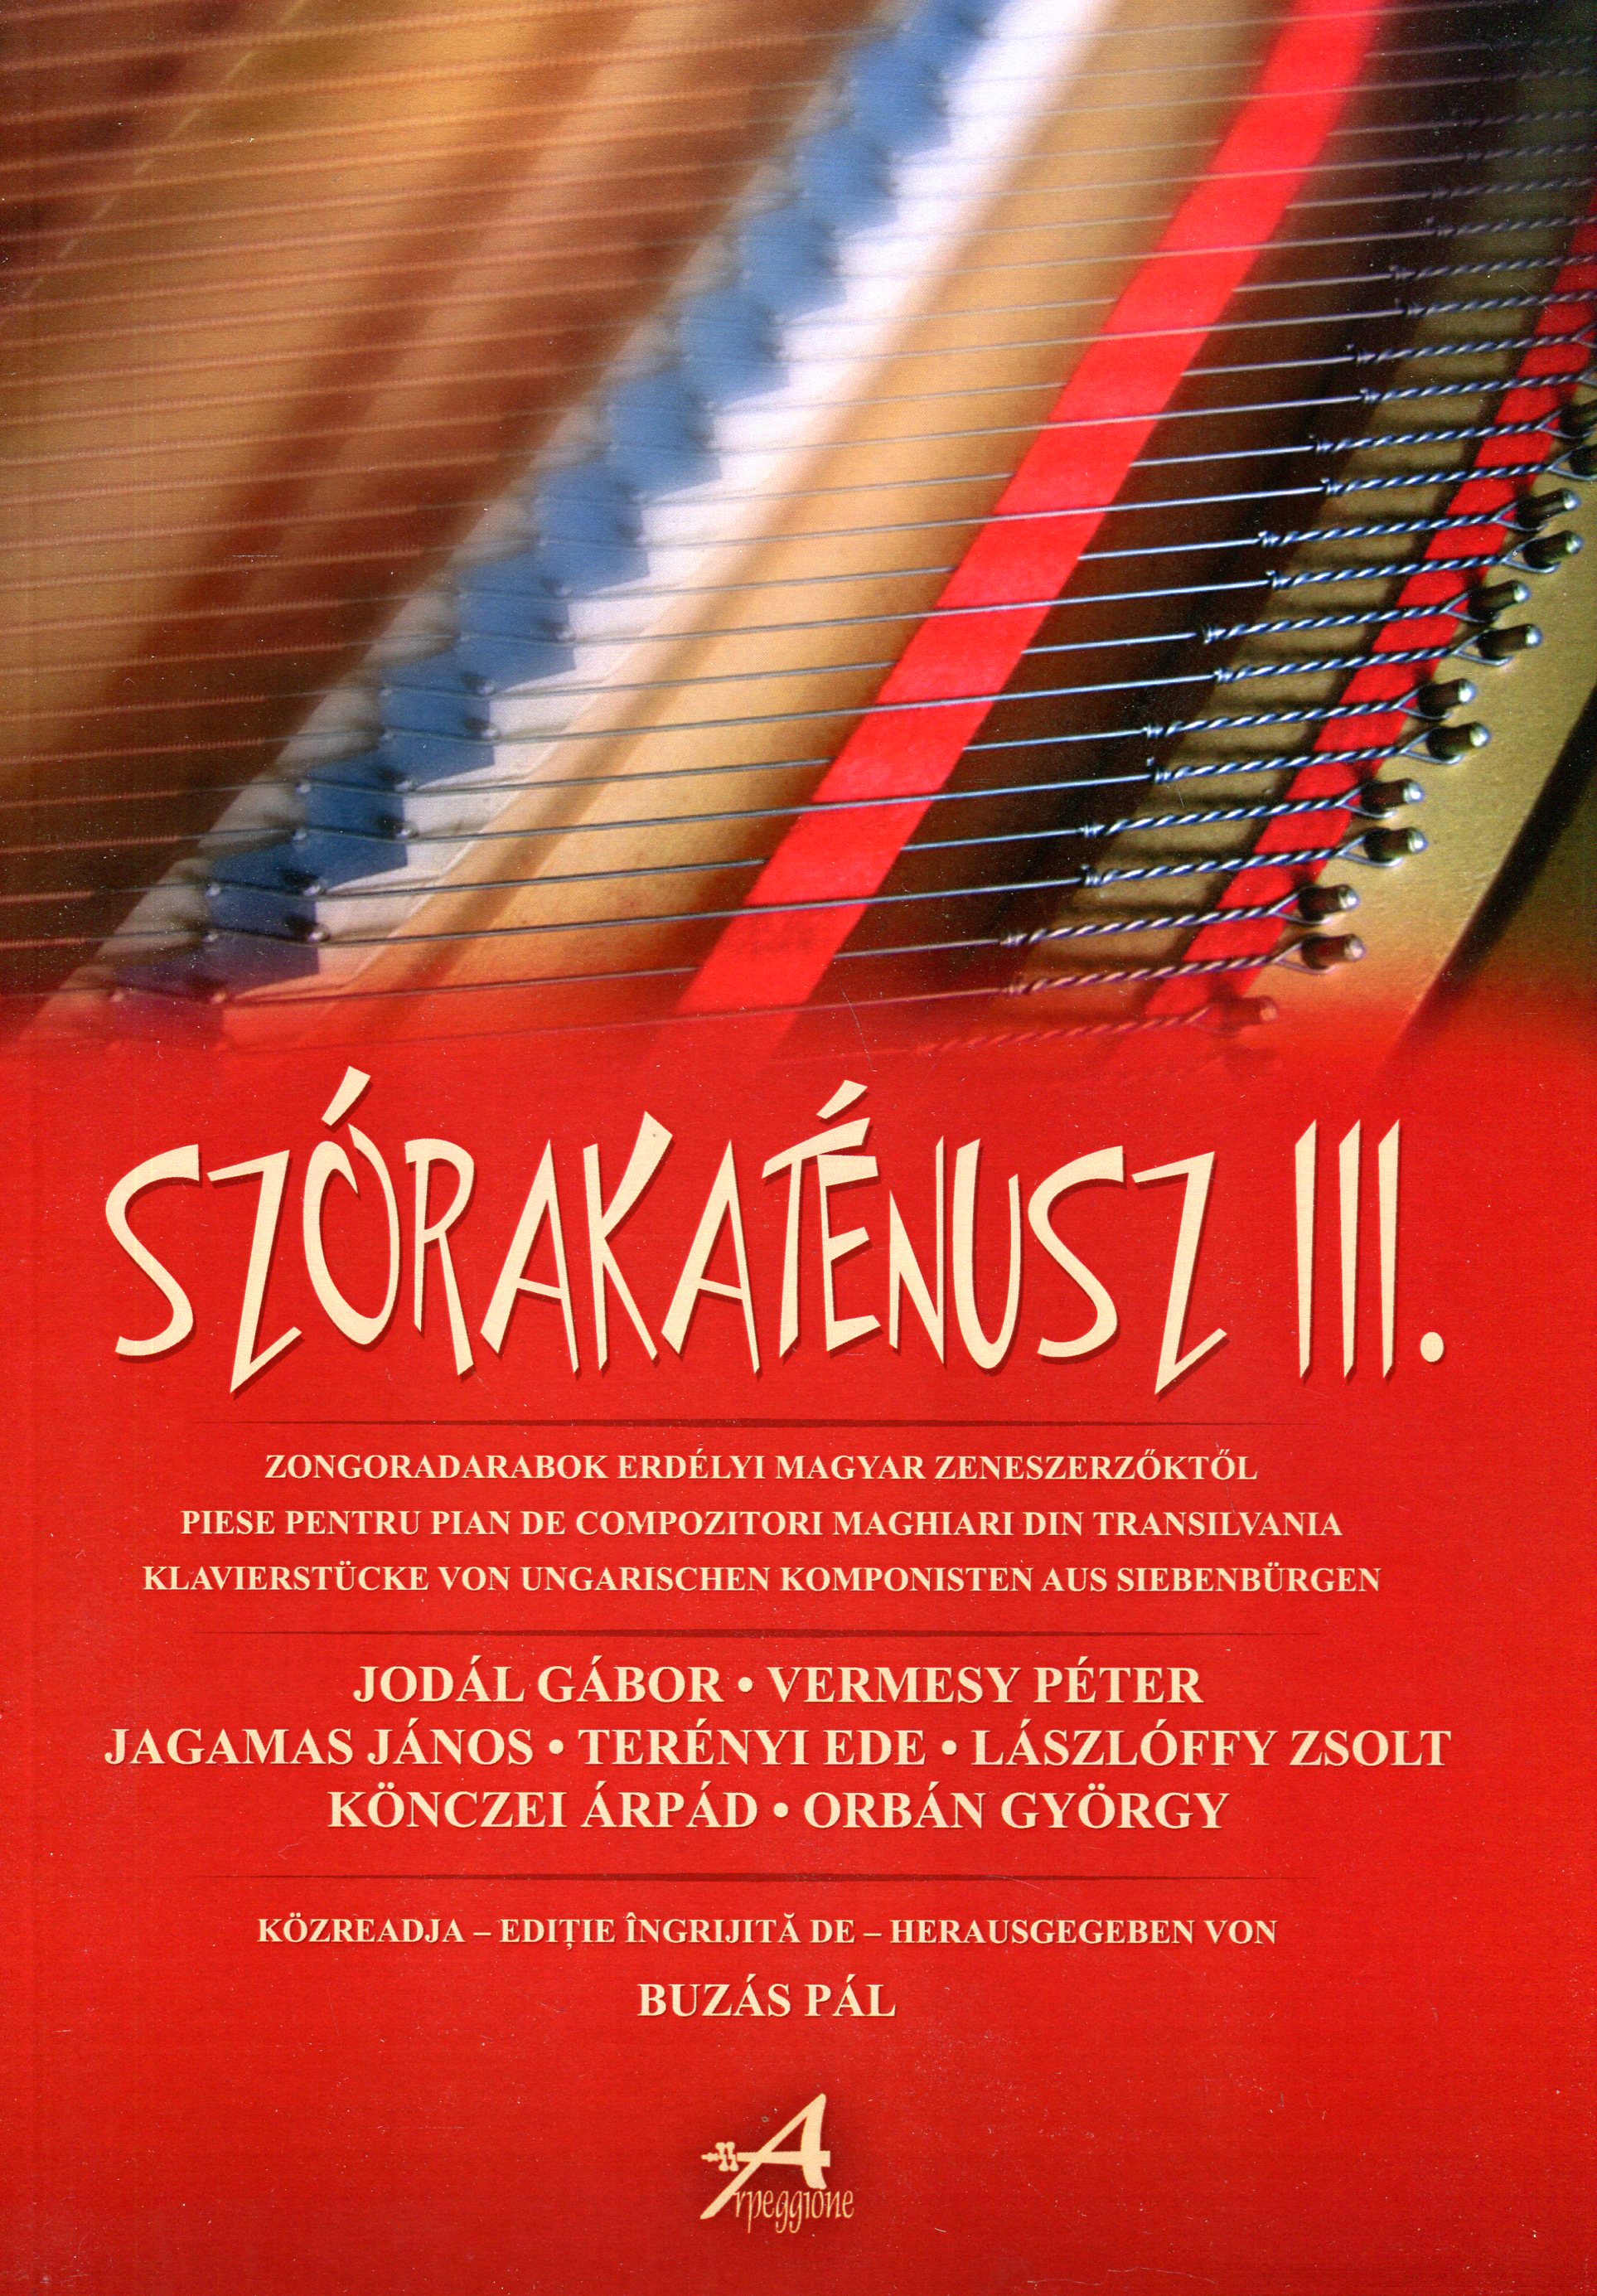 Szorakatenusz III. Piese pentru pian de compozitori maghiari din Transilvania